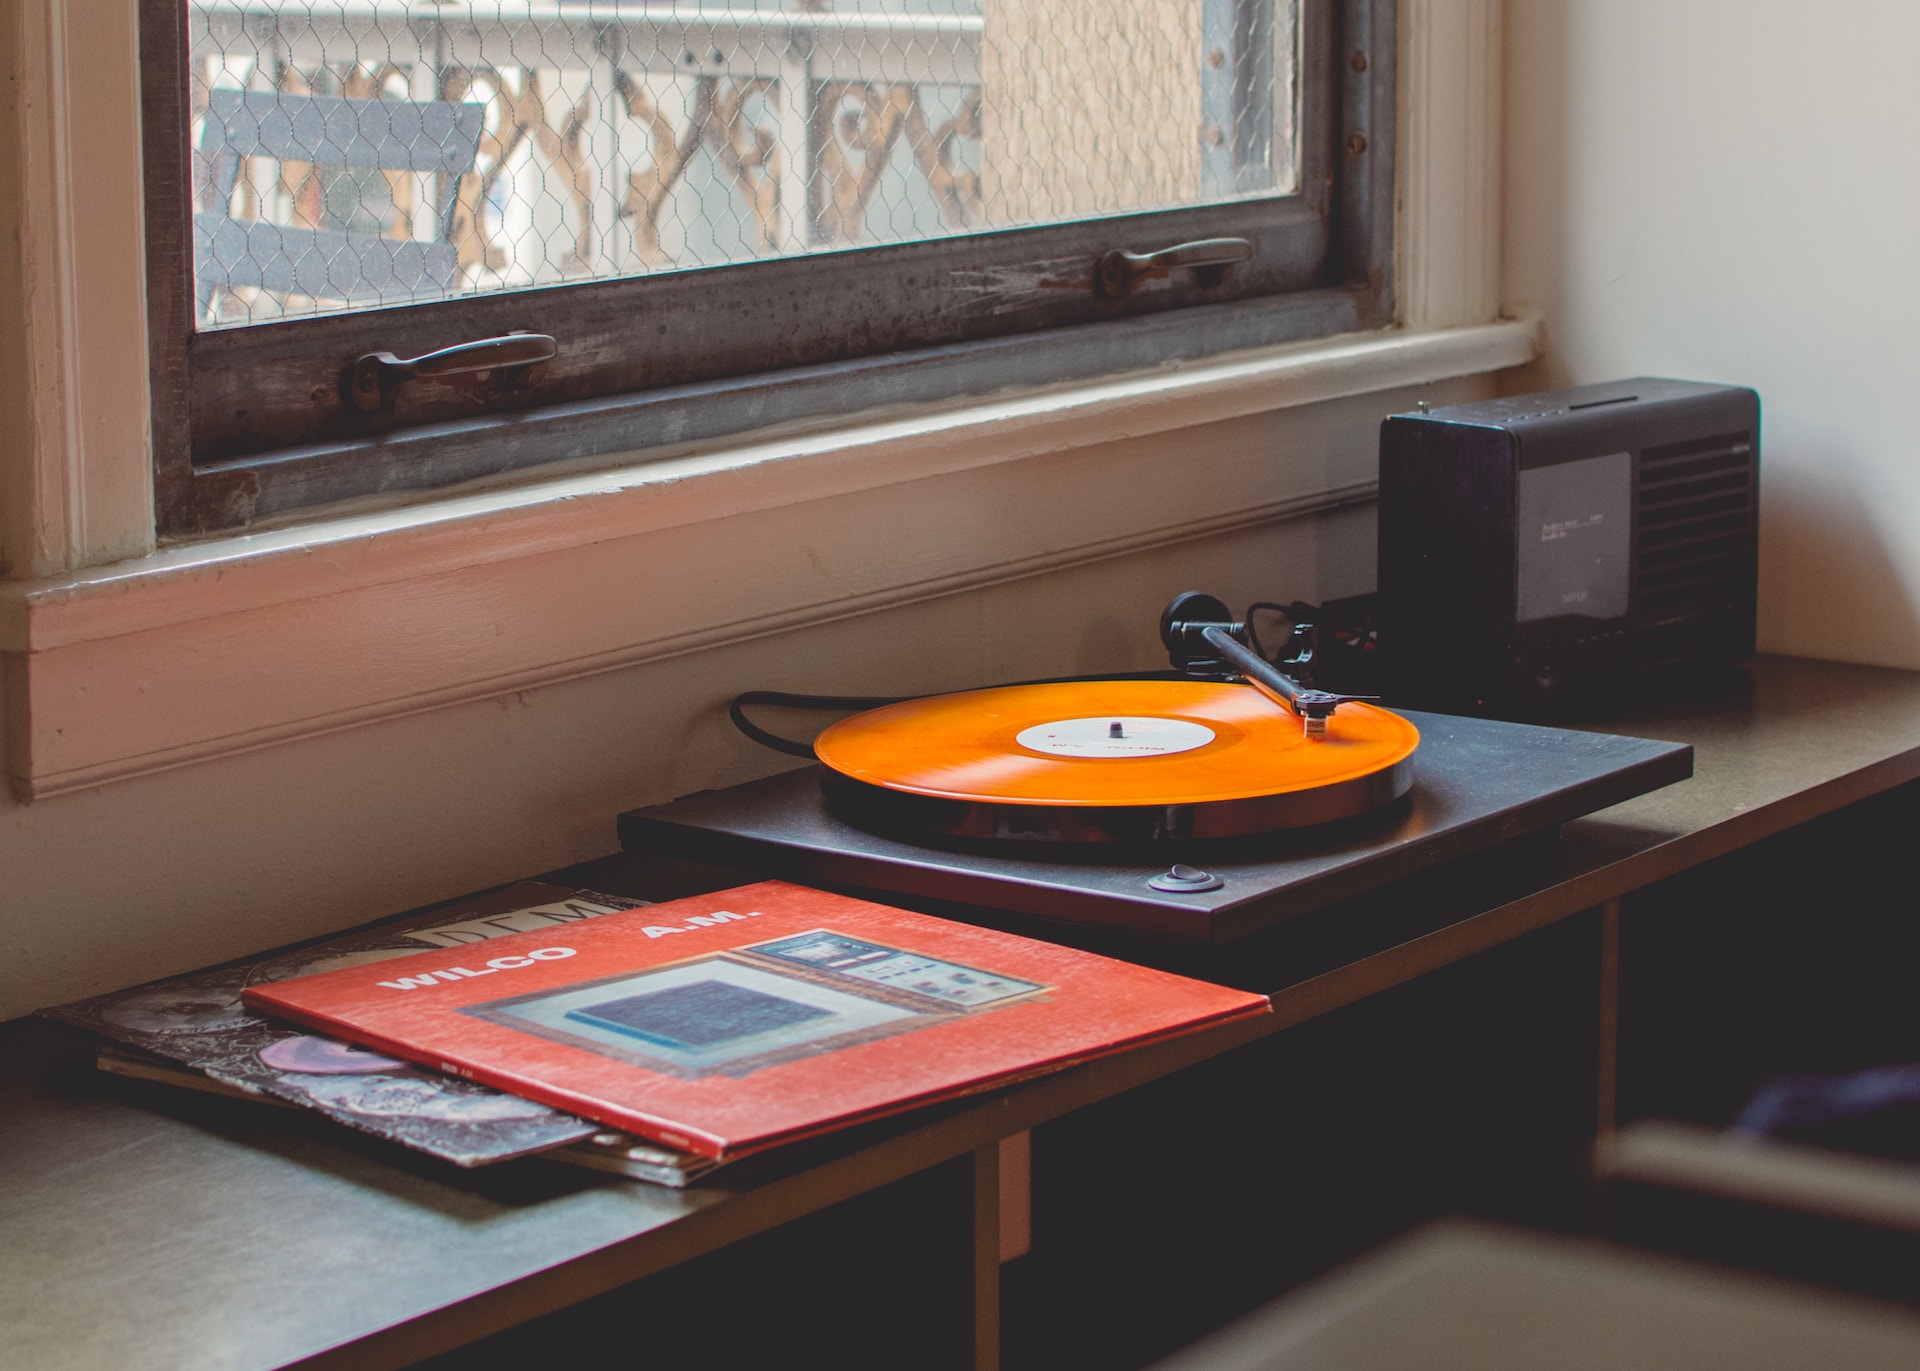 Vinyly a gramofon - skvělá dvojka do vašeho bytu i domu